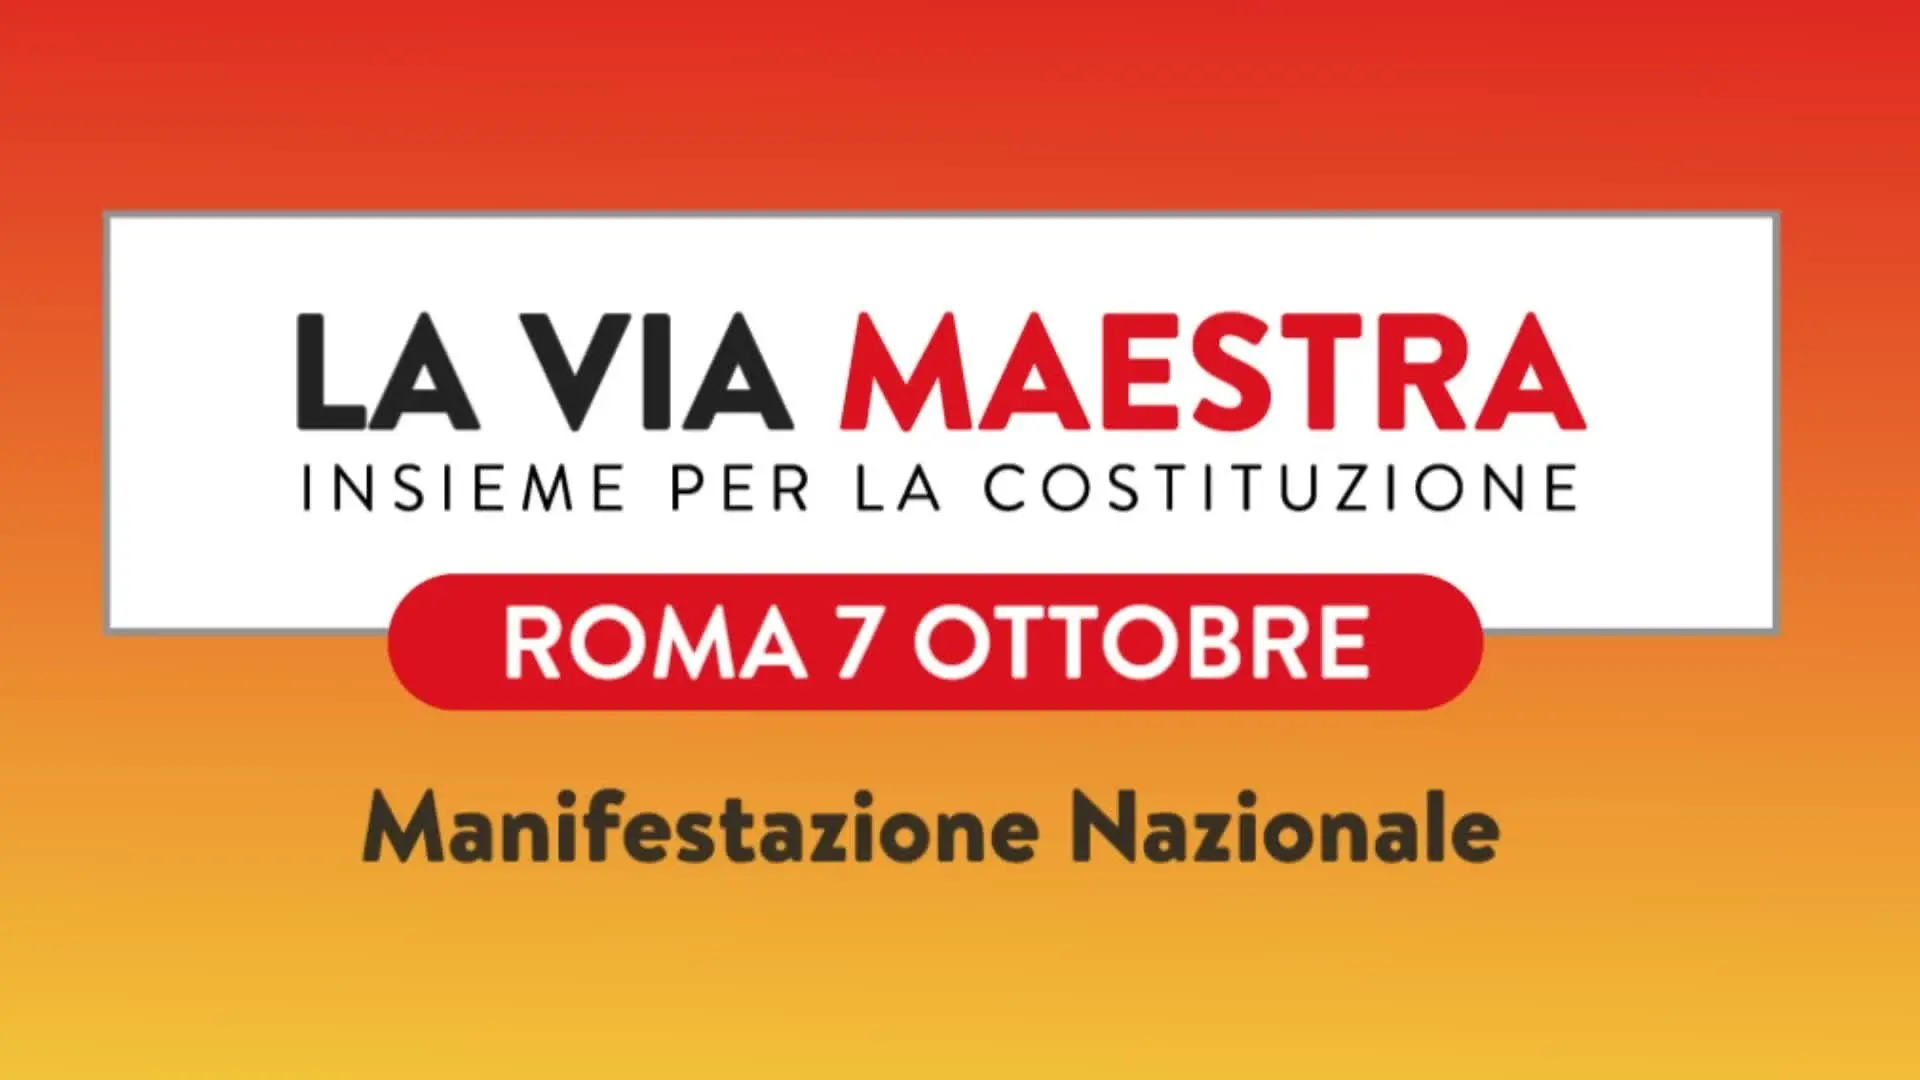 La Via Maestra: 7 ottobre tutti in piazza a Roma